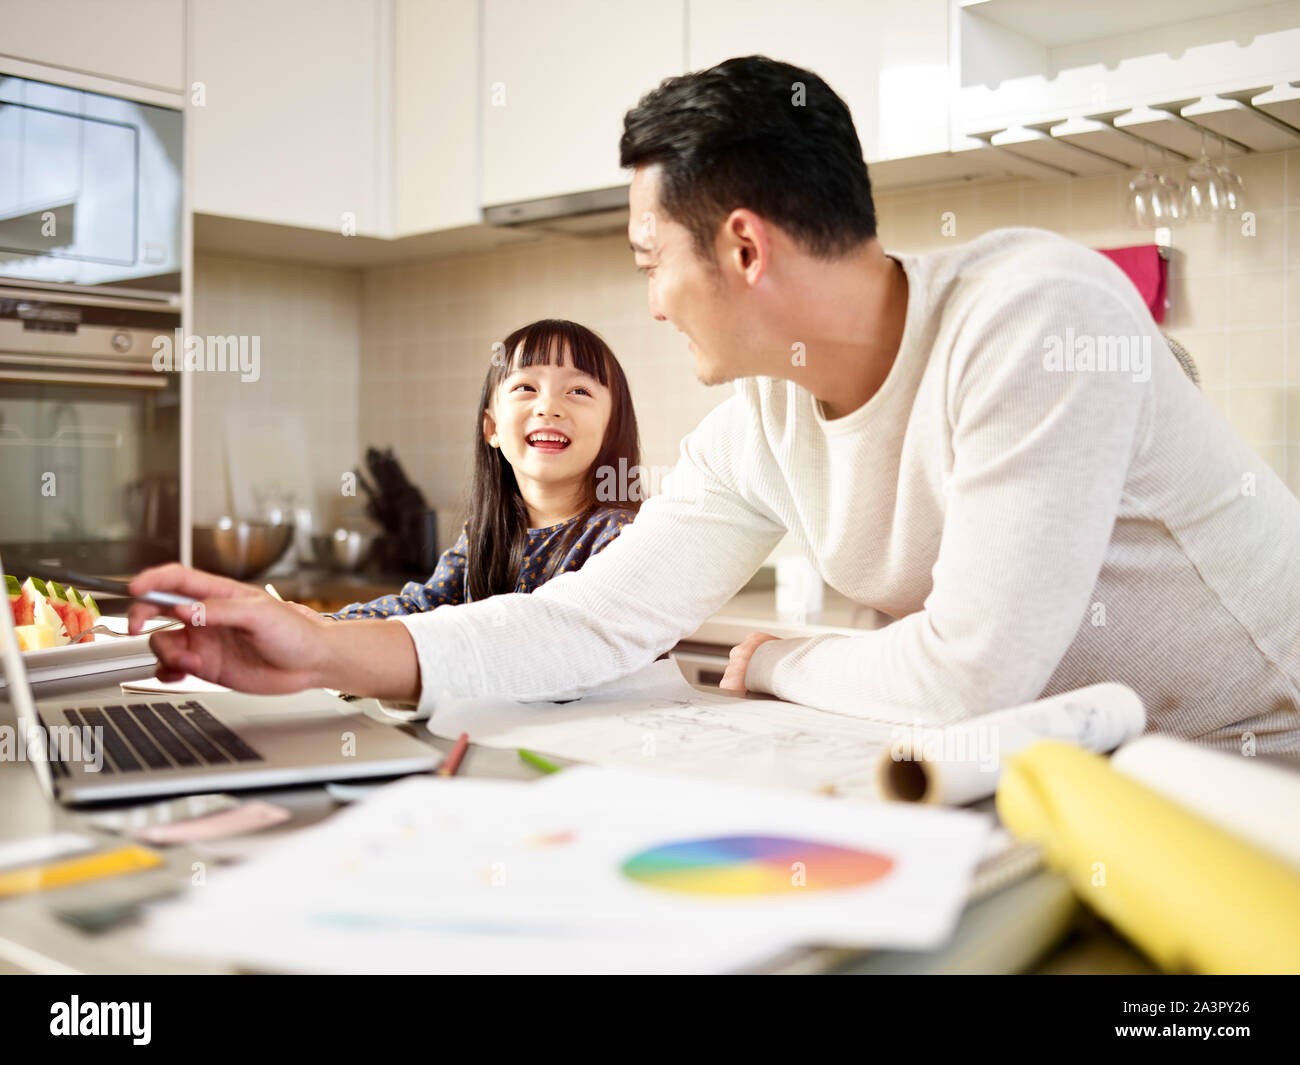 Hombre asiático joven diseñador free lance padre trabajando en casa teniendo cuidado de la hija. Foto de stock